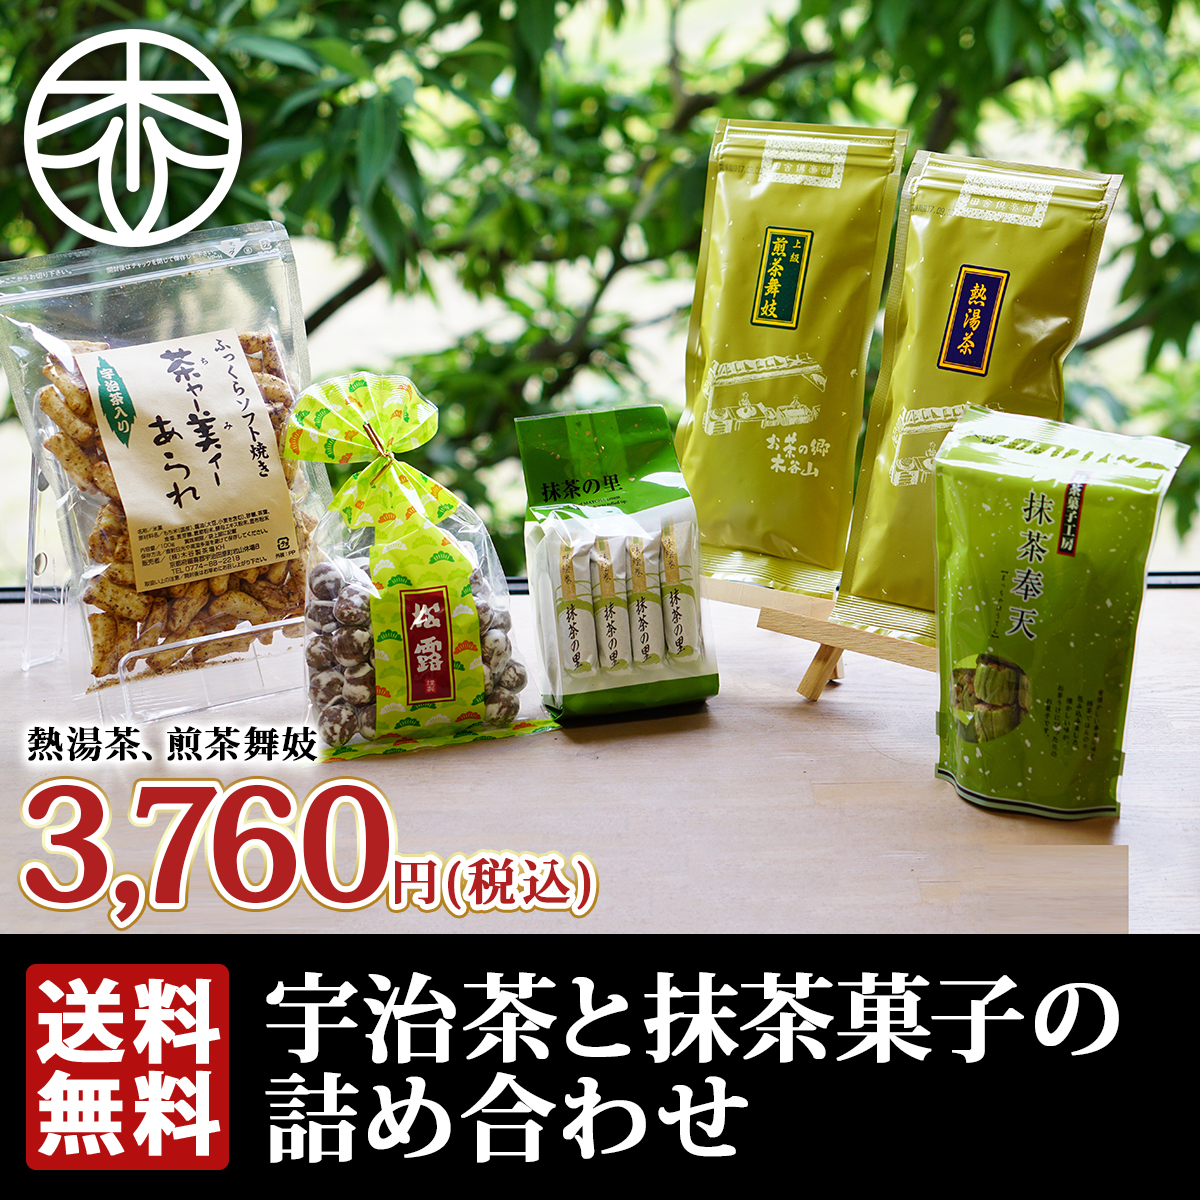 海外出張のお土産・手土産におすすめの日本のお菓子はどれ？